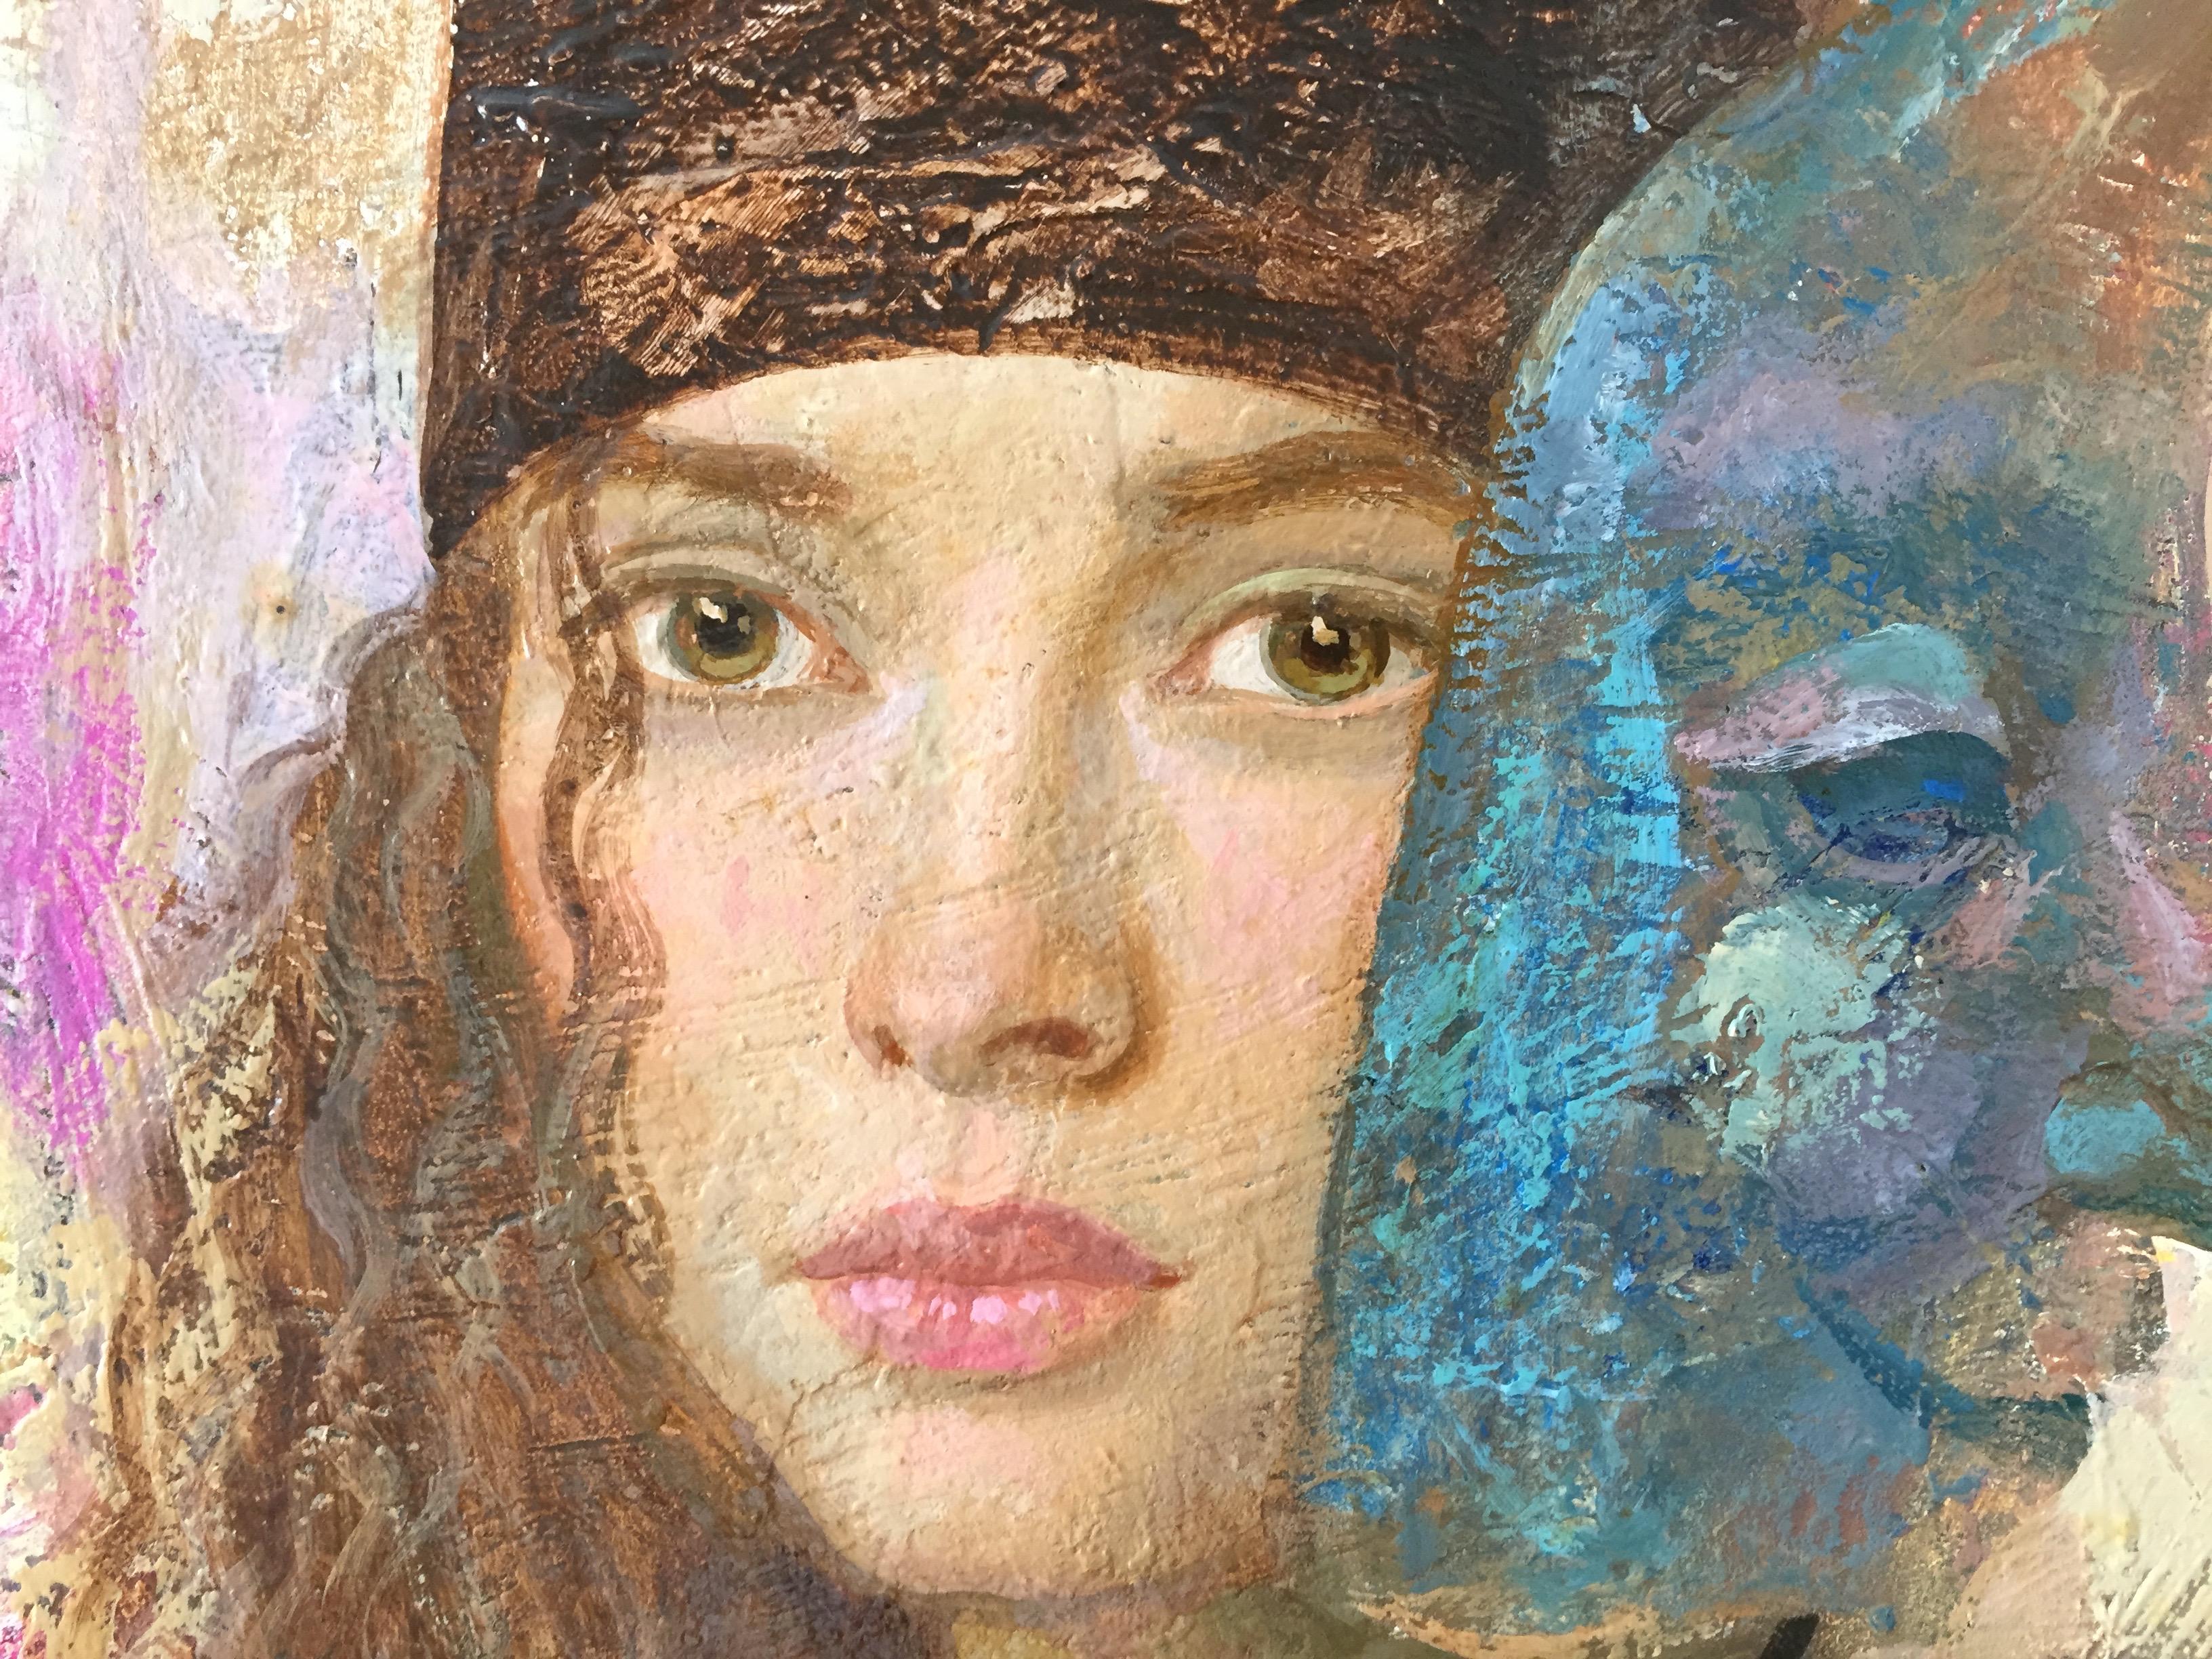 Casting, figurative Malerei (schöne Frauen und farbenfrohe Masken)  (Braun), Portrait Painting, von Goyo Dominguez